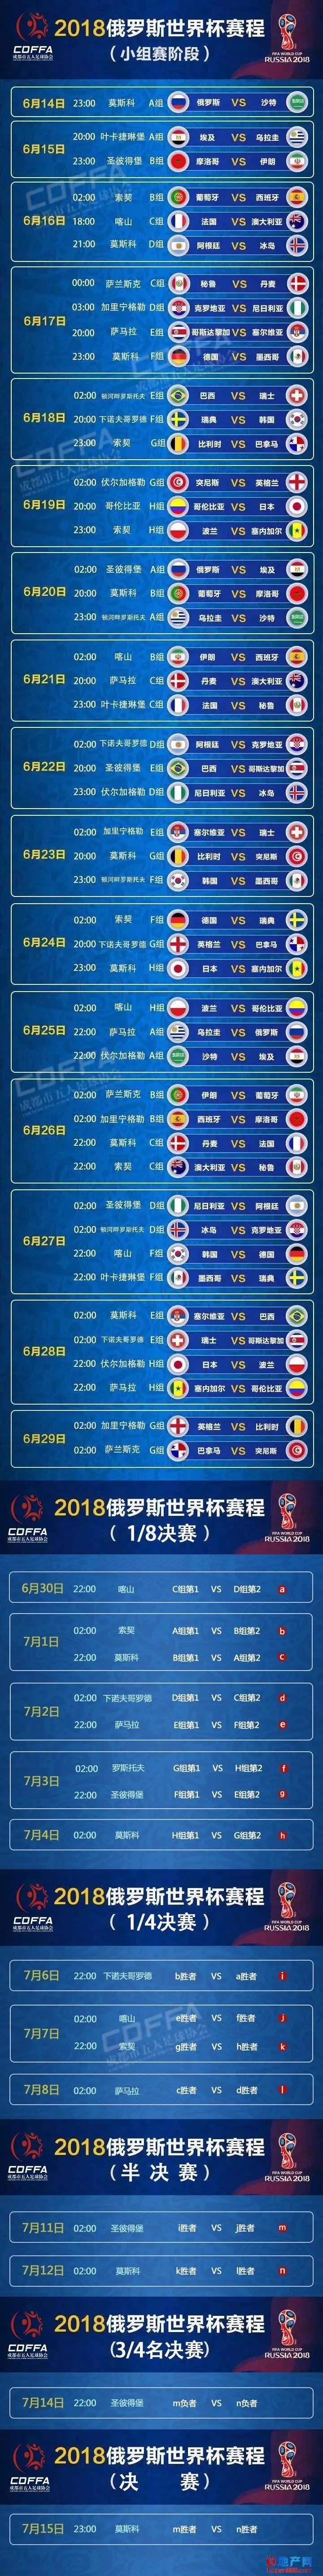 2018世界杯「16强」 2018年世界杯16强比赛结果